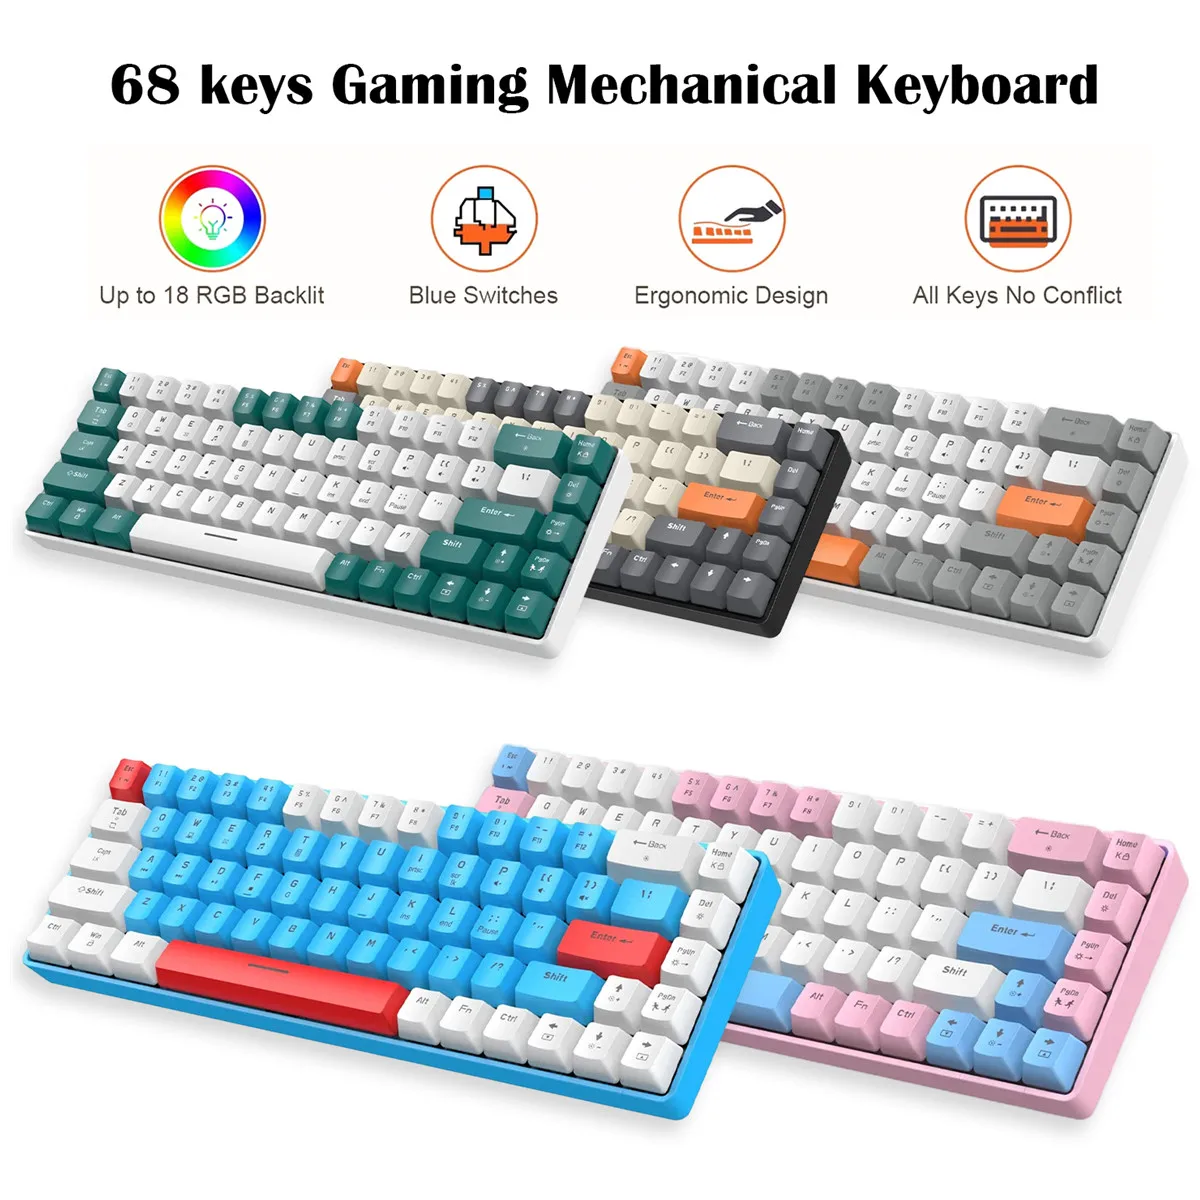 

Игровая Механическая Проводная клавиатура, 68 клавиш, синий переключатель, колпачки клавиш PBT ABS, RGB подсветка, USB Type-C, подключение к ПК, планшету, настольному ПК